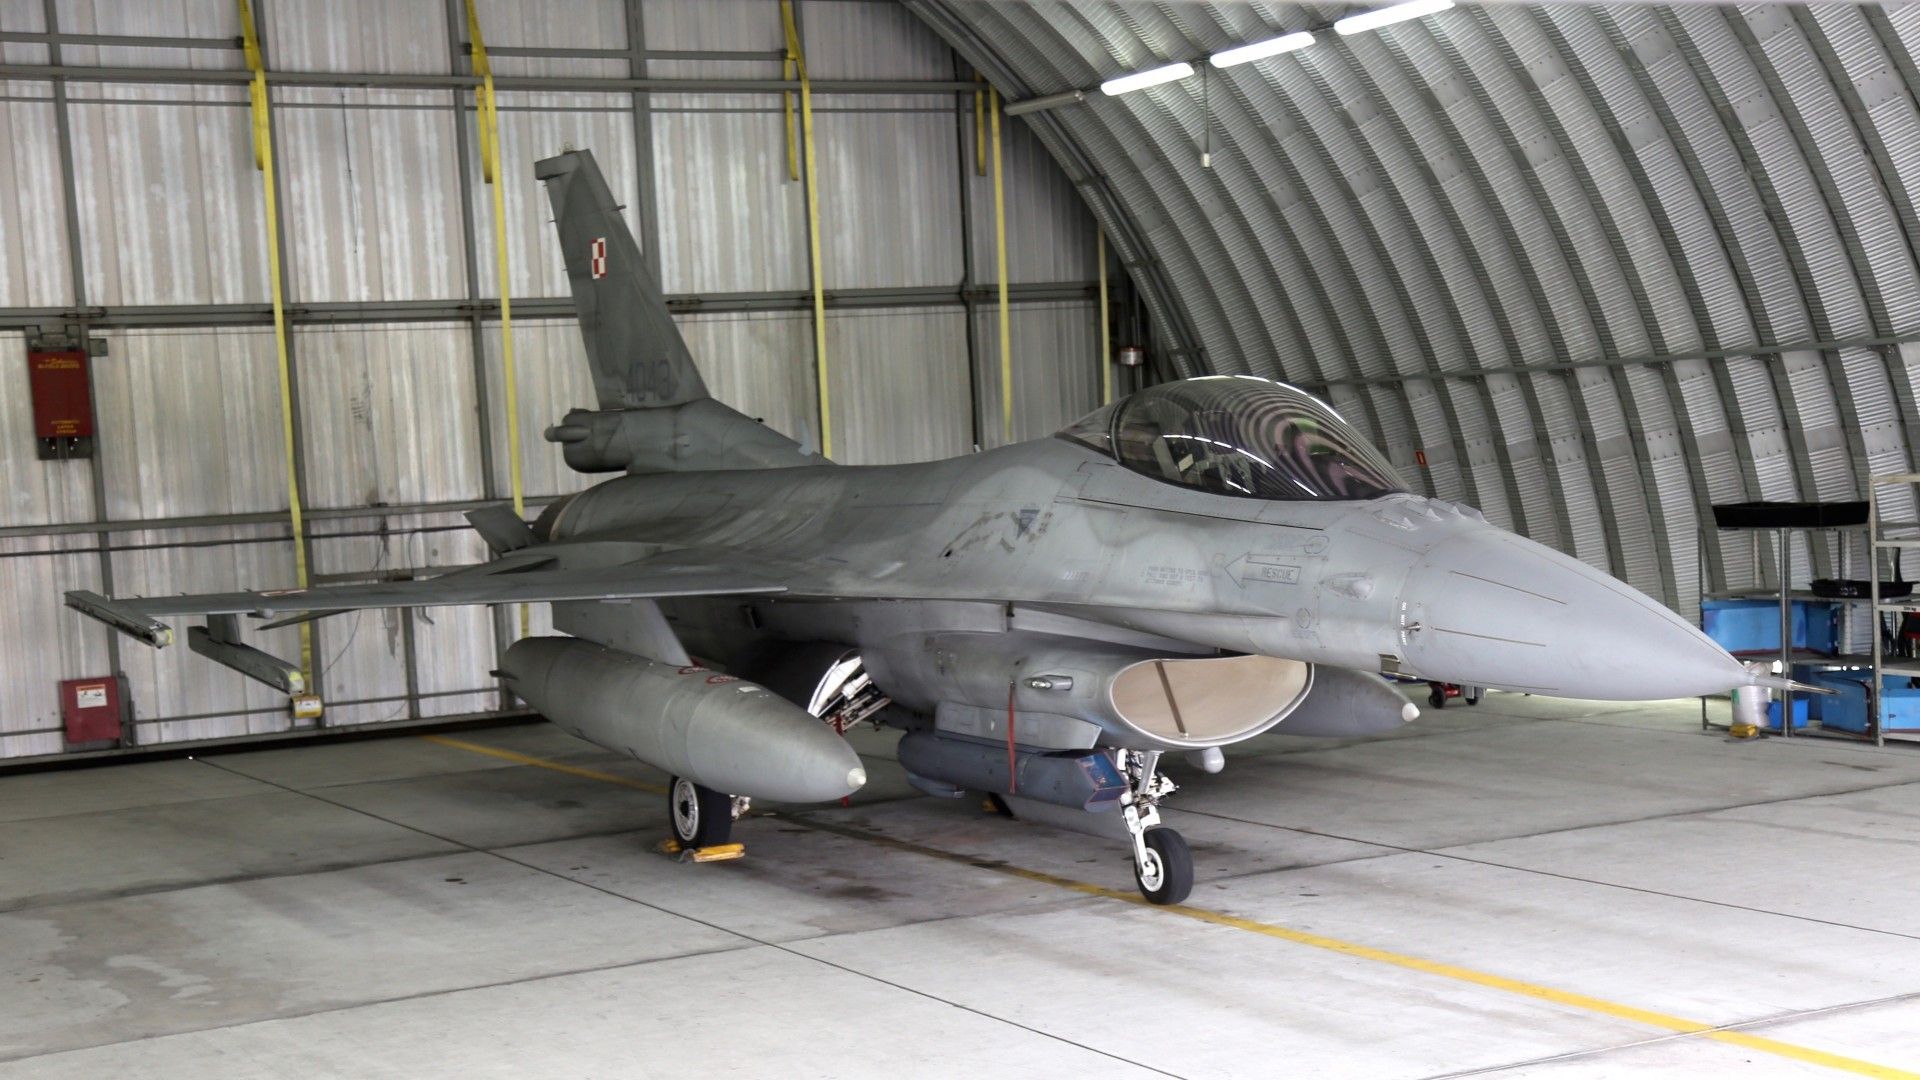 Samolot F-16C "Jastrząb" w bazie w Poznaniu-Krzesinach. Takie maszyny biorą właśnie udział w misji Baltic Air Policing. Fot. Rafał Lesiecki / Defence24.pl